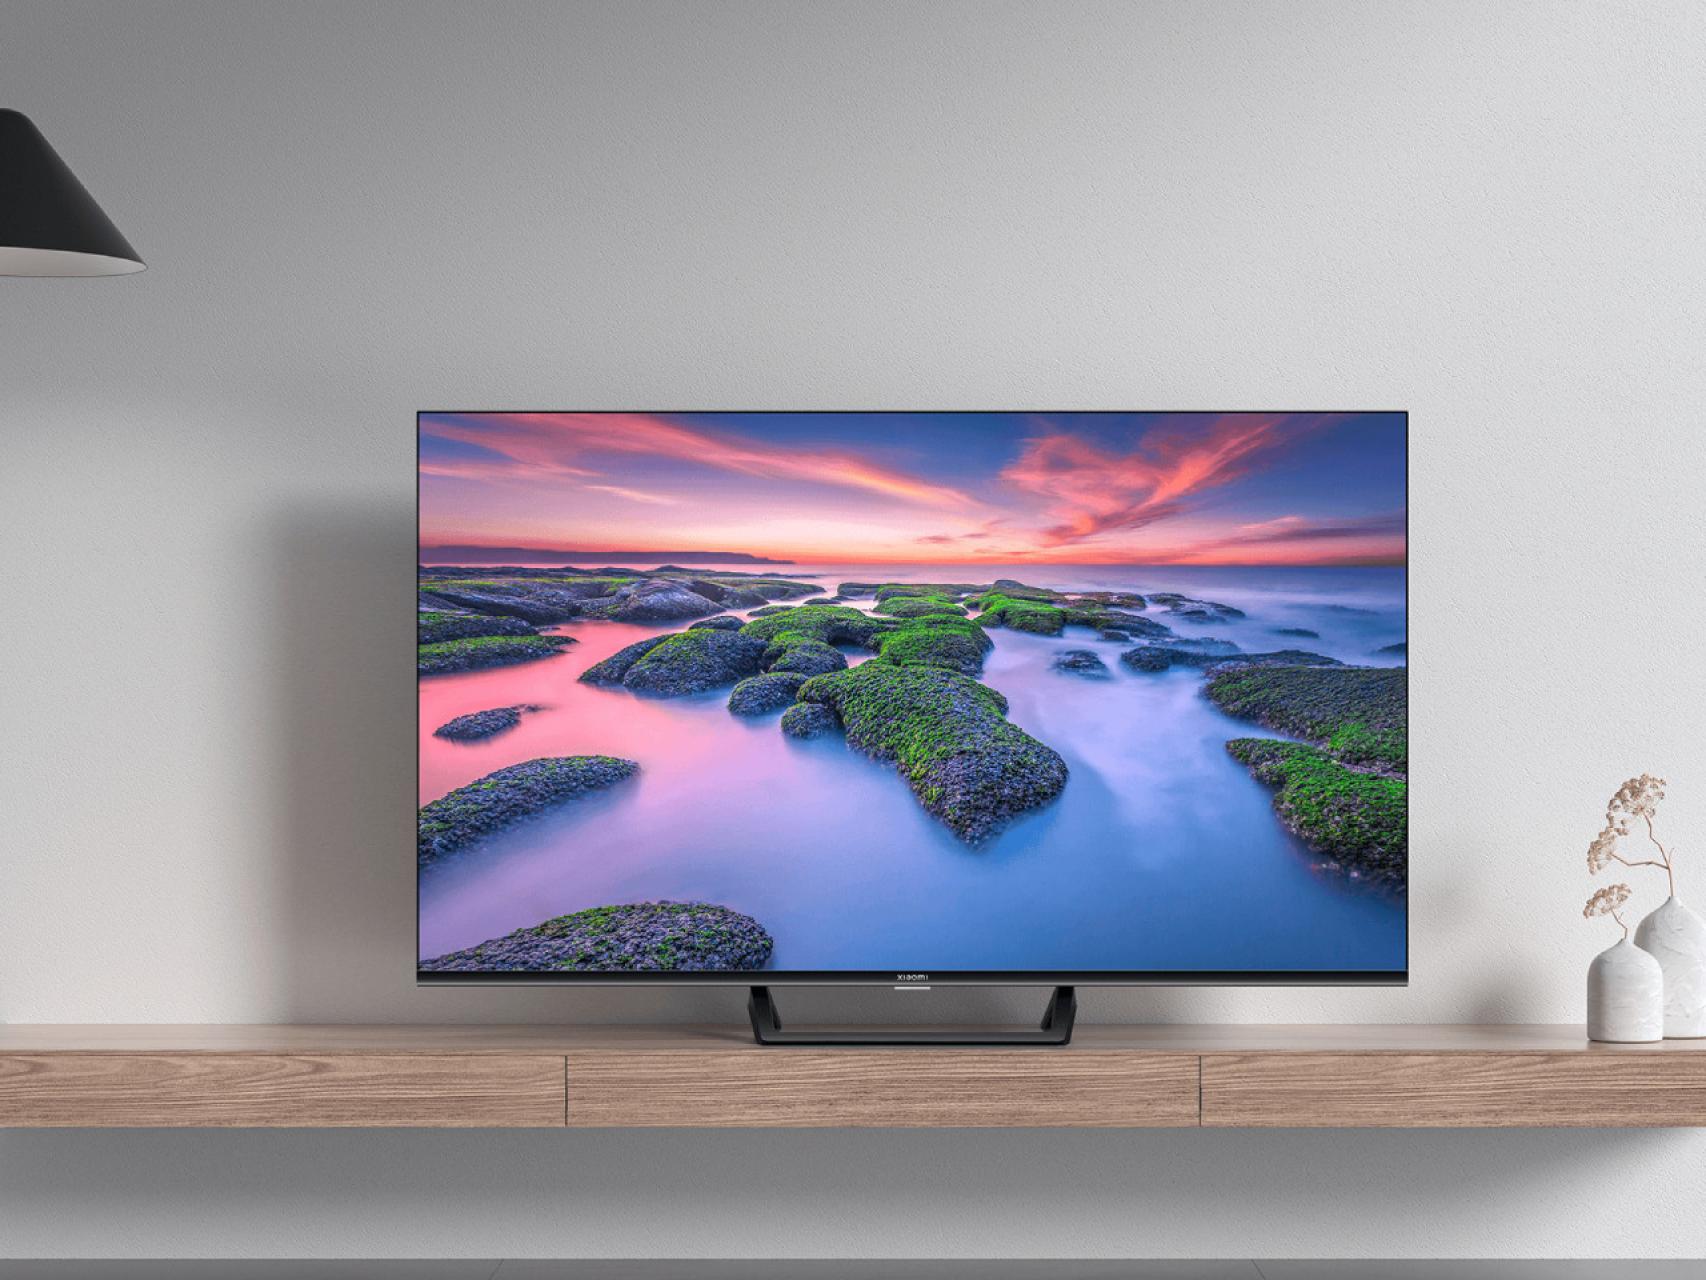 10 cosas que debes considerar antes de comprar un Smart TV nuevo